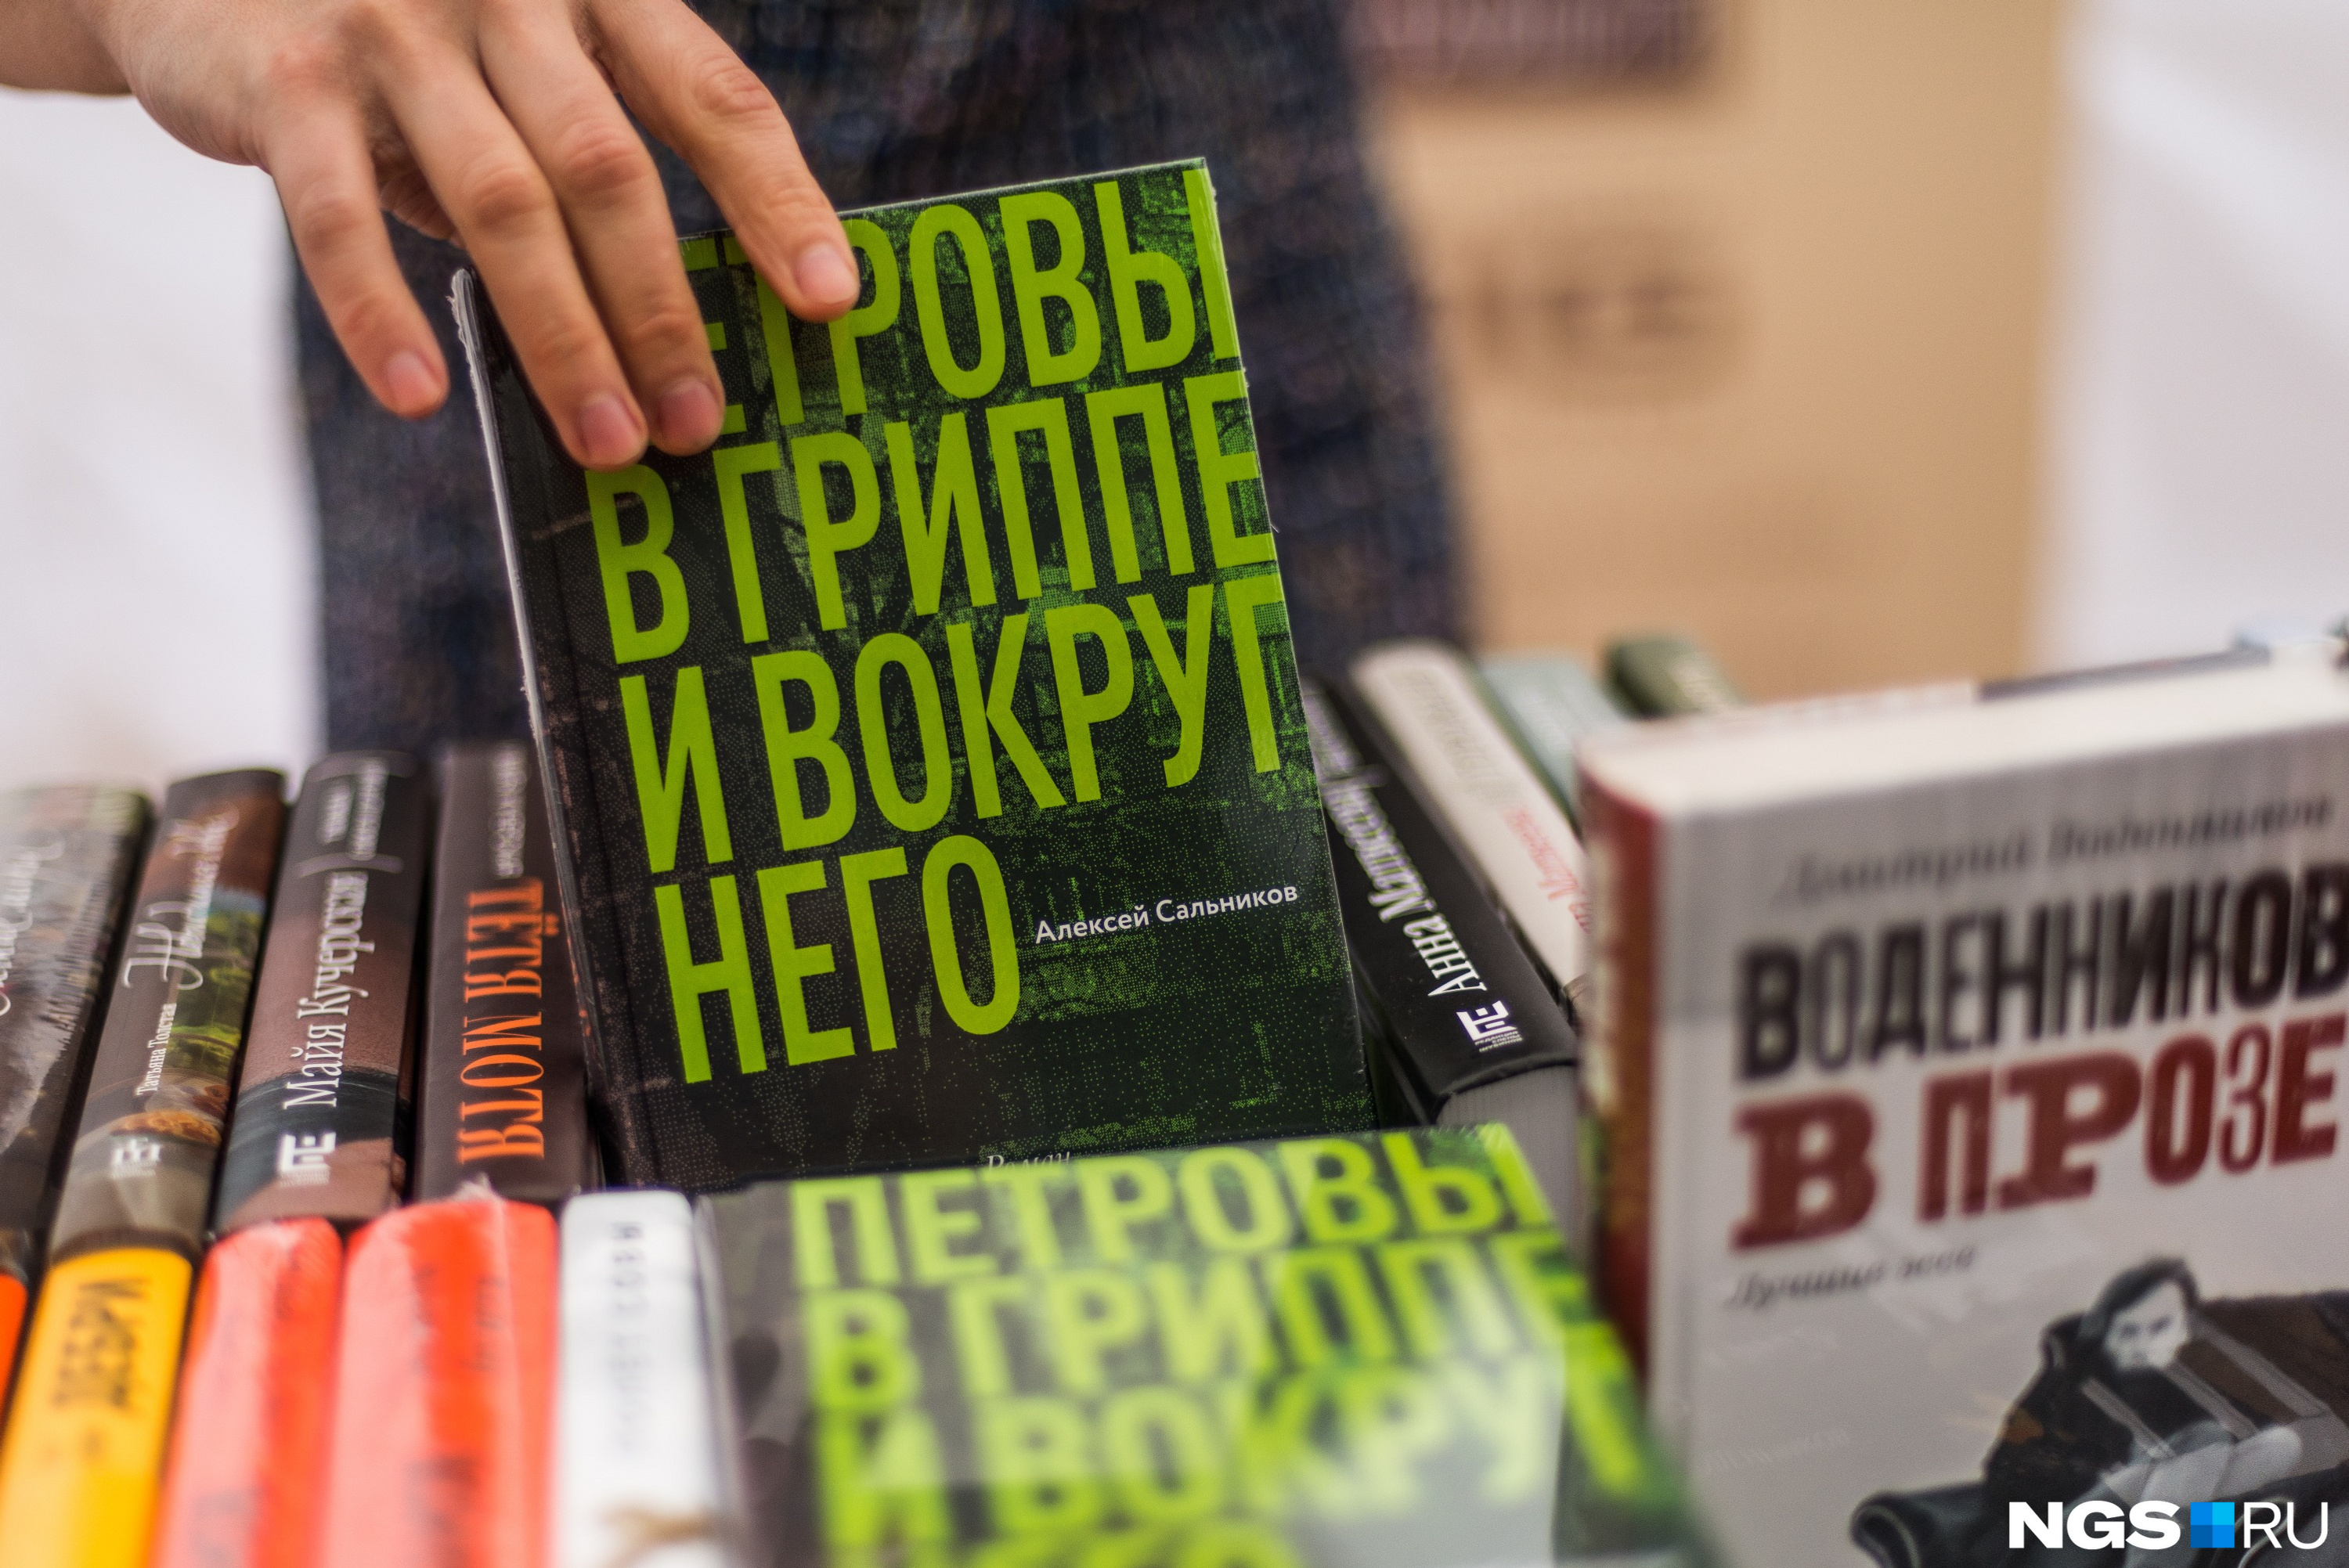 Книгу Алексея Сальникова «Петровы в гриппе и вокруг него», названную лучшей в 2018 году, можно приобрести с 30% скидкой — за 401 рубль